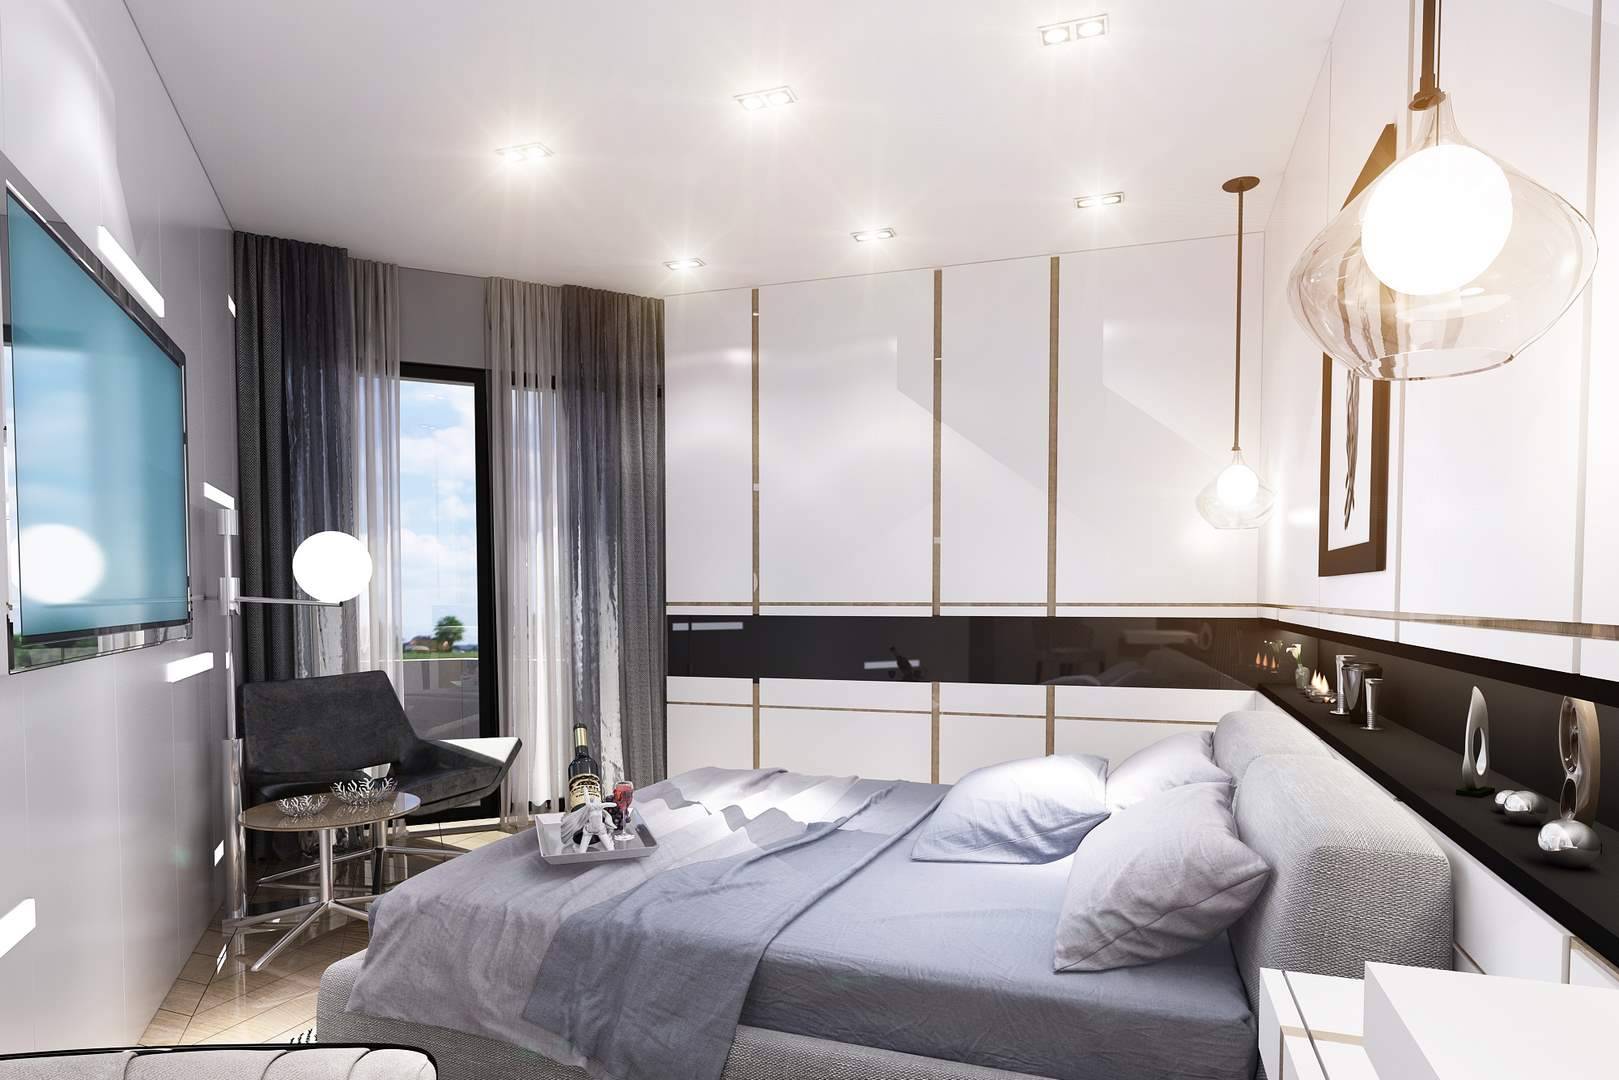 Kartal Marina Residence İstanbul yatak odası tasarımı